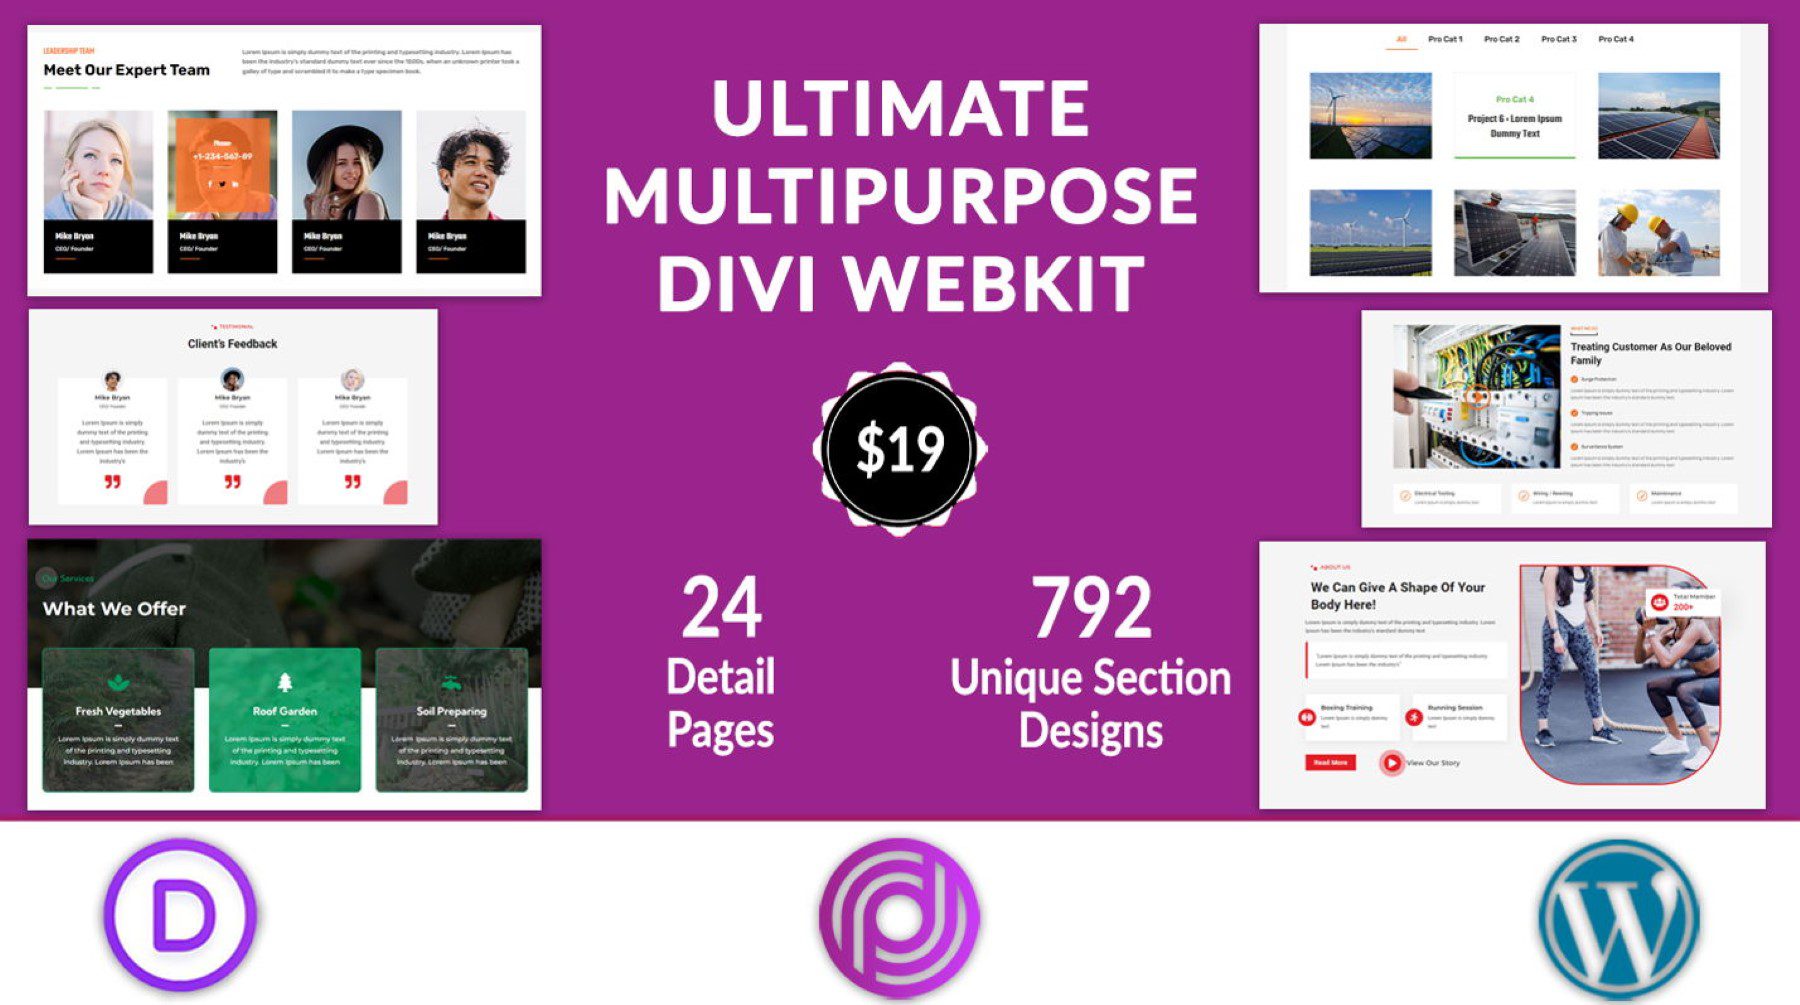 Ultimate Multipurpose Divi Webkit Purchase